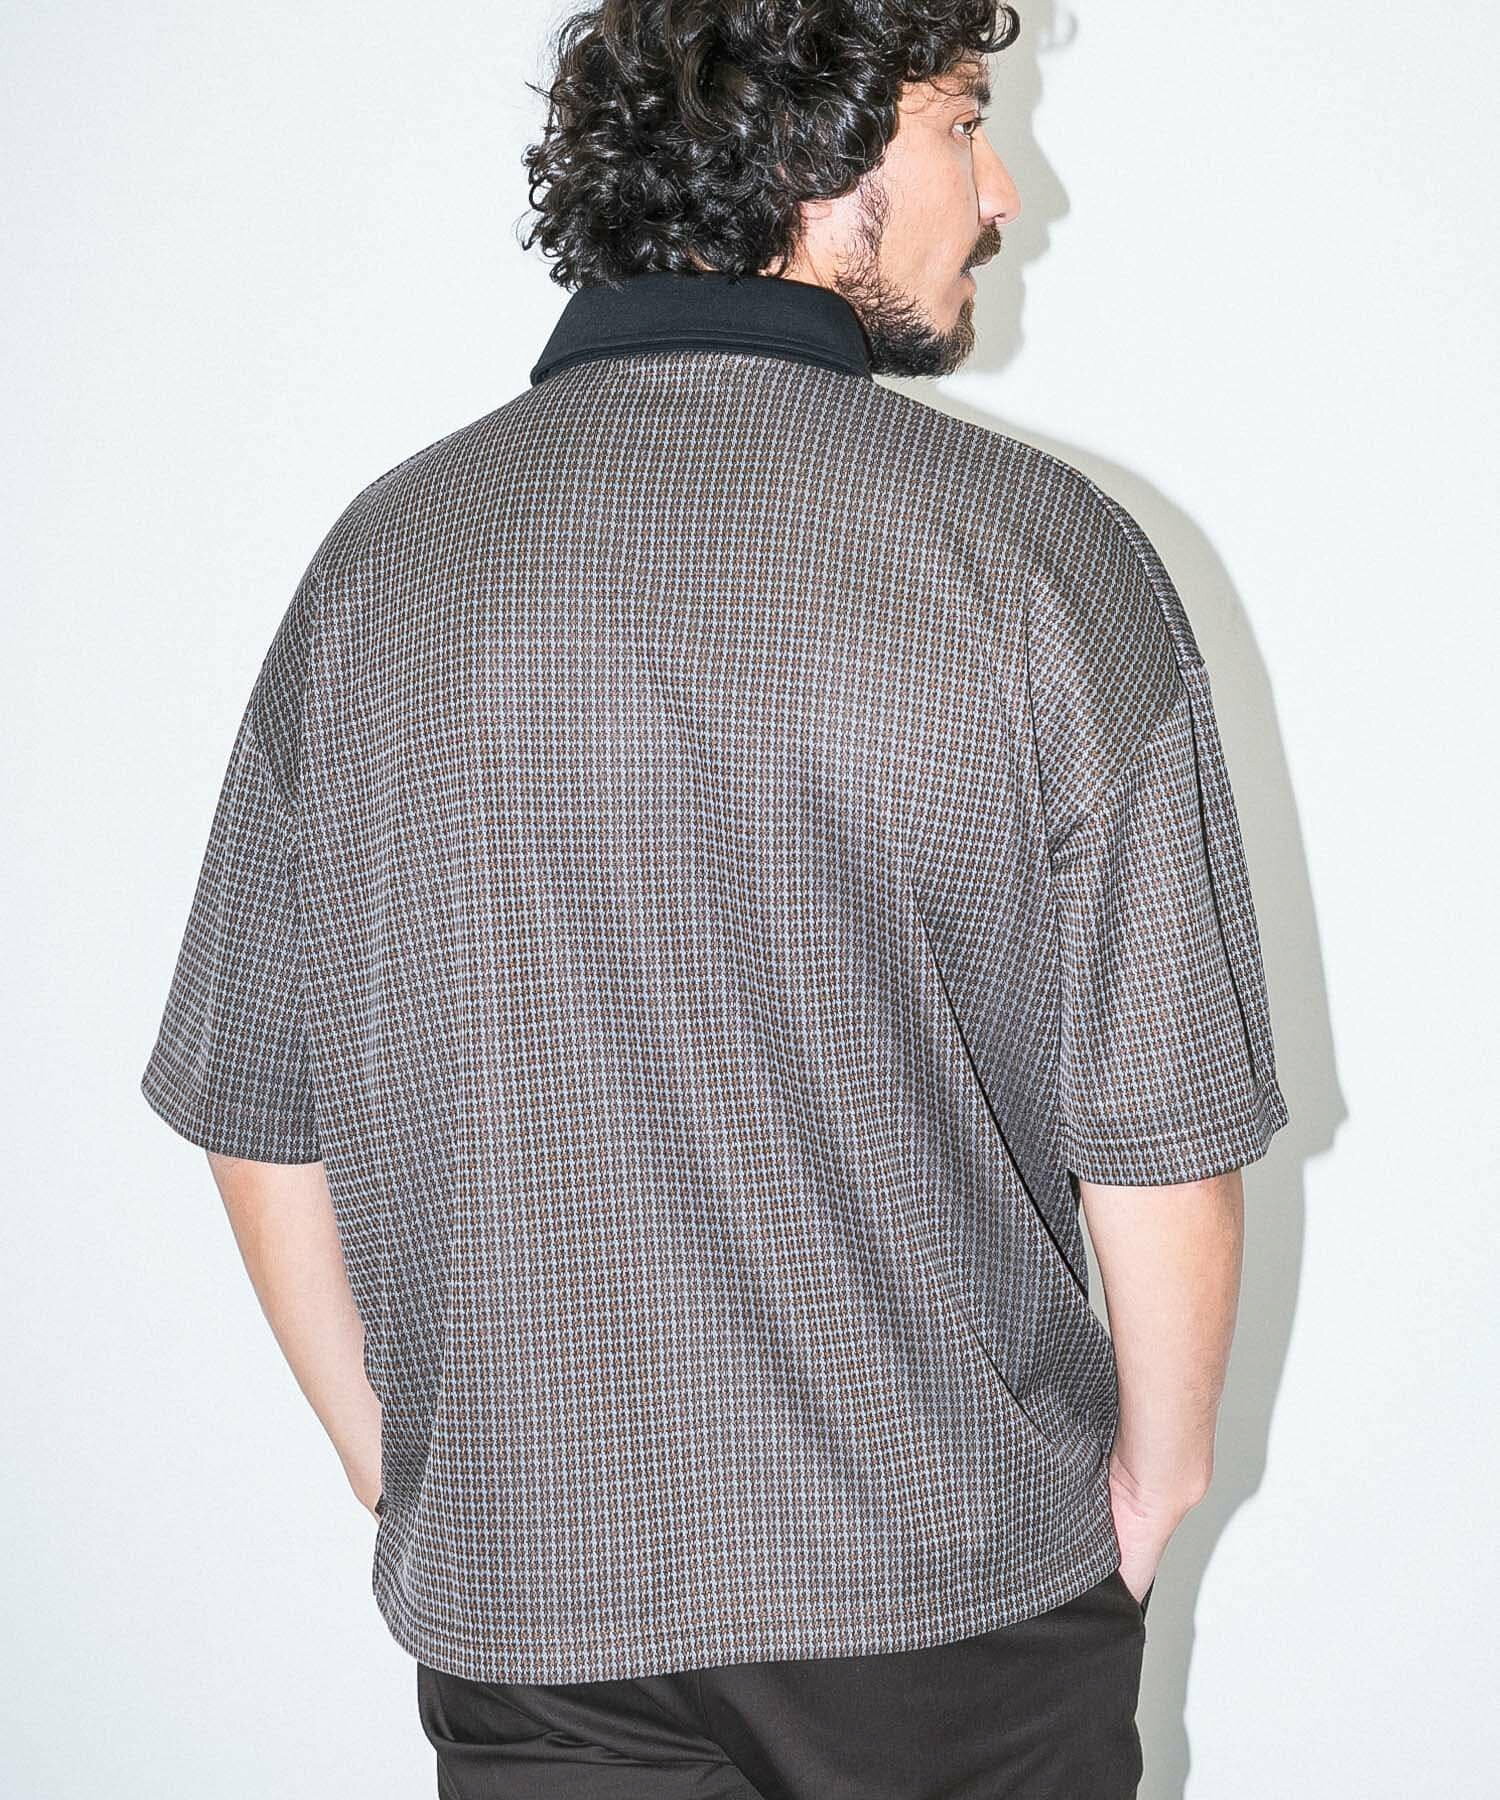 『吸水速乾』『UVカット』 OOPS カットジャガード半袖ポロシャツ